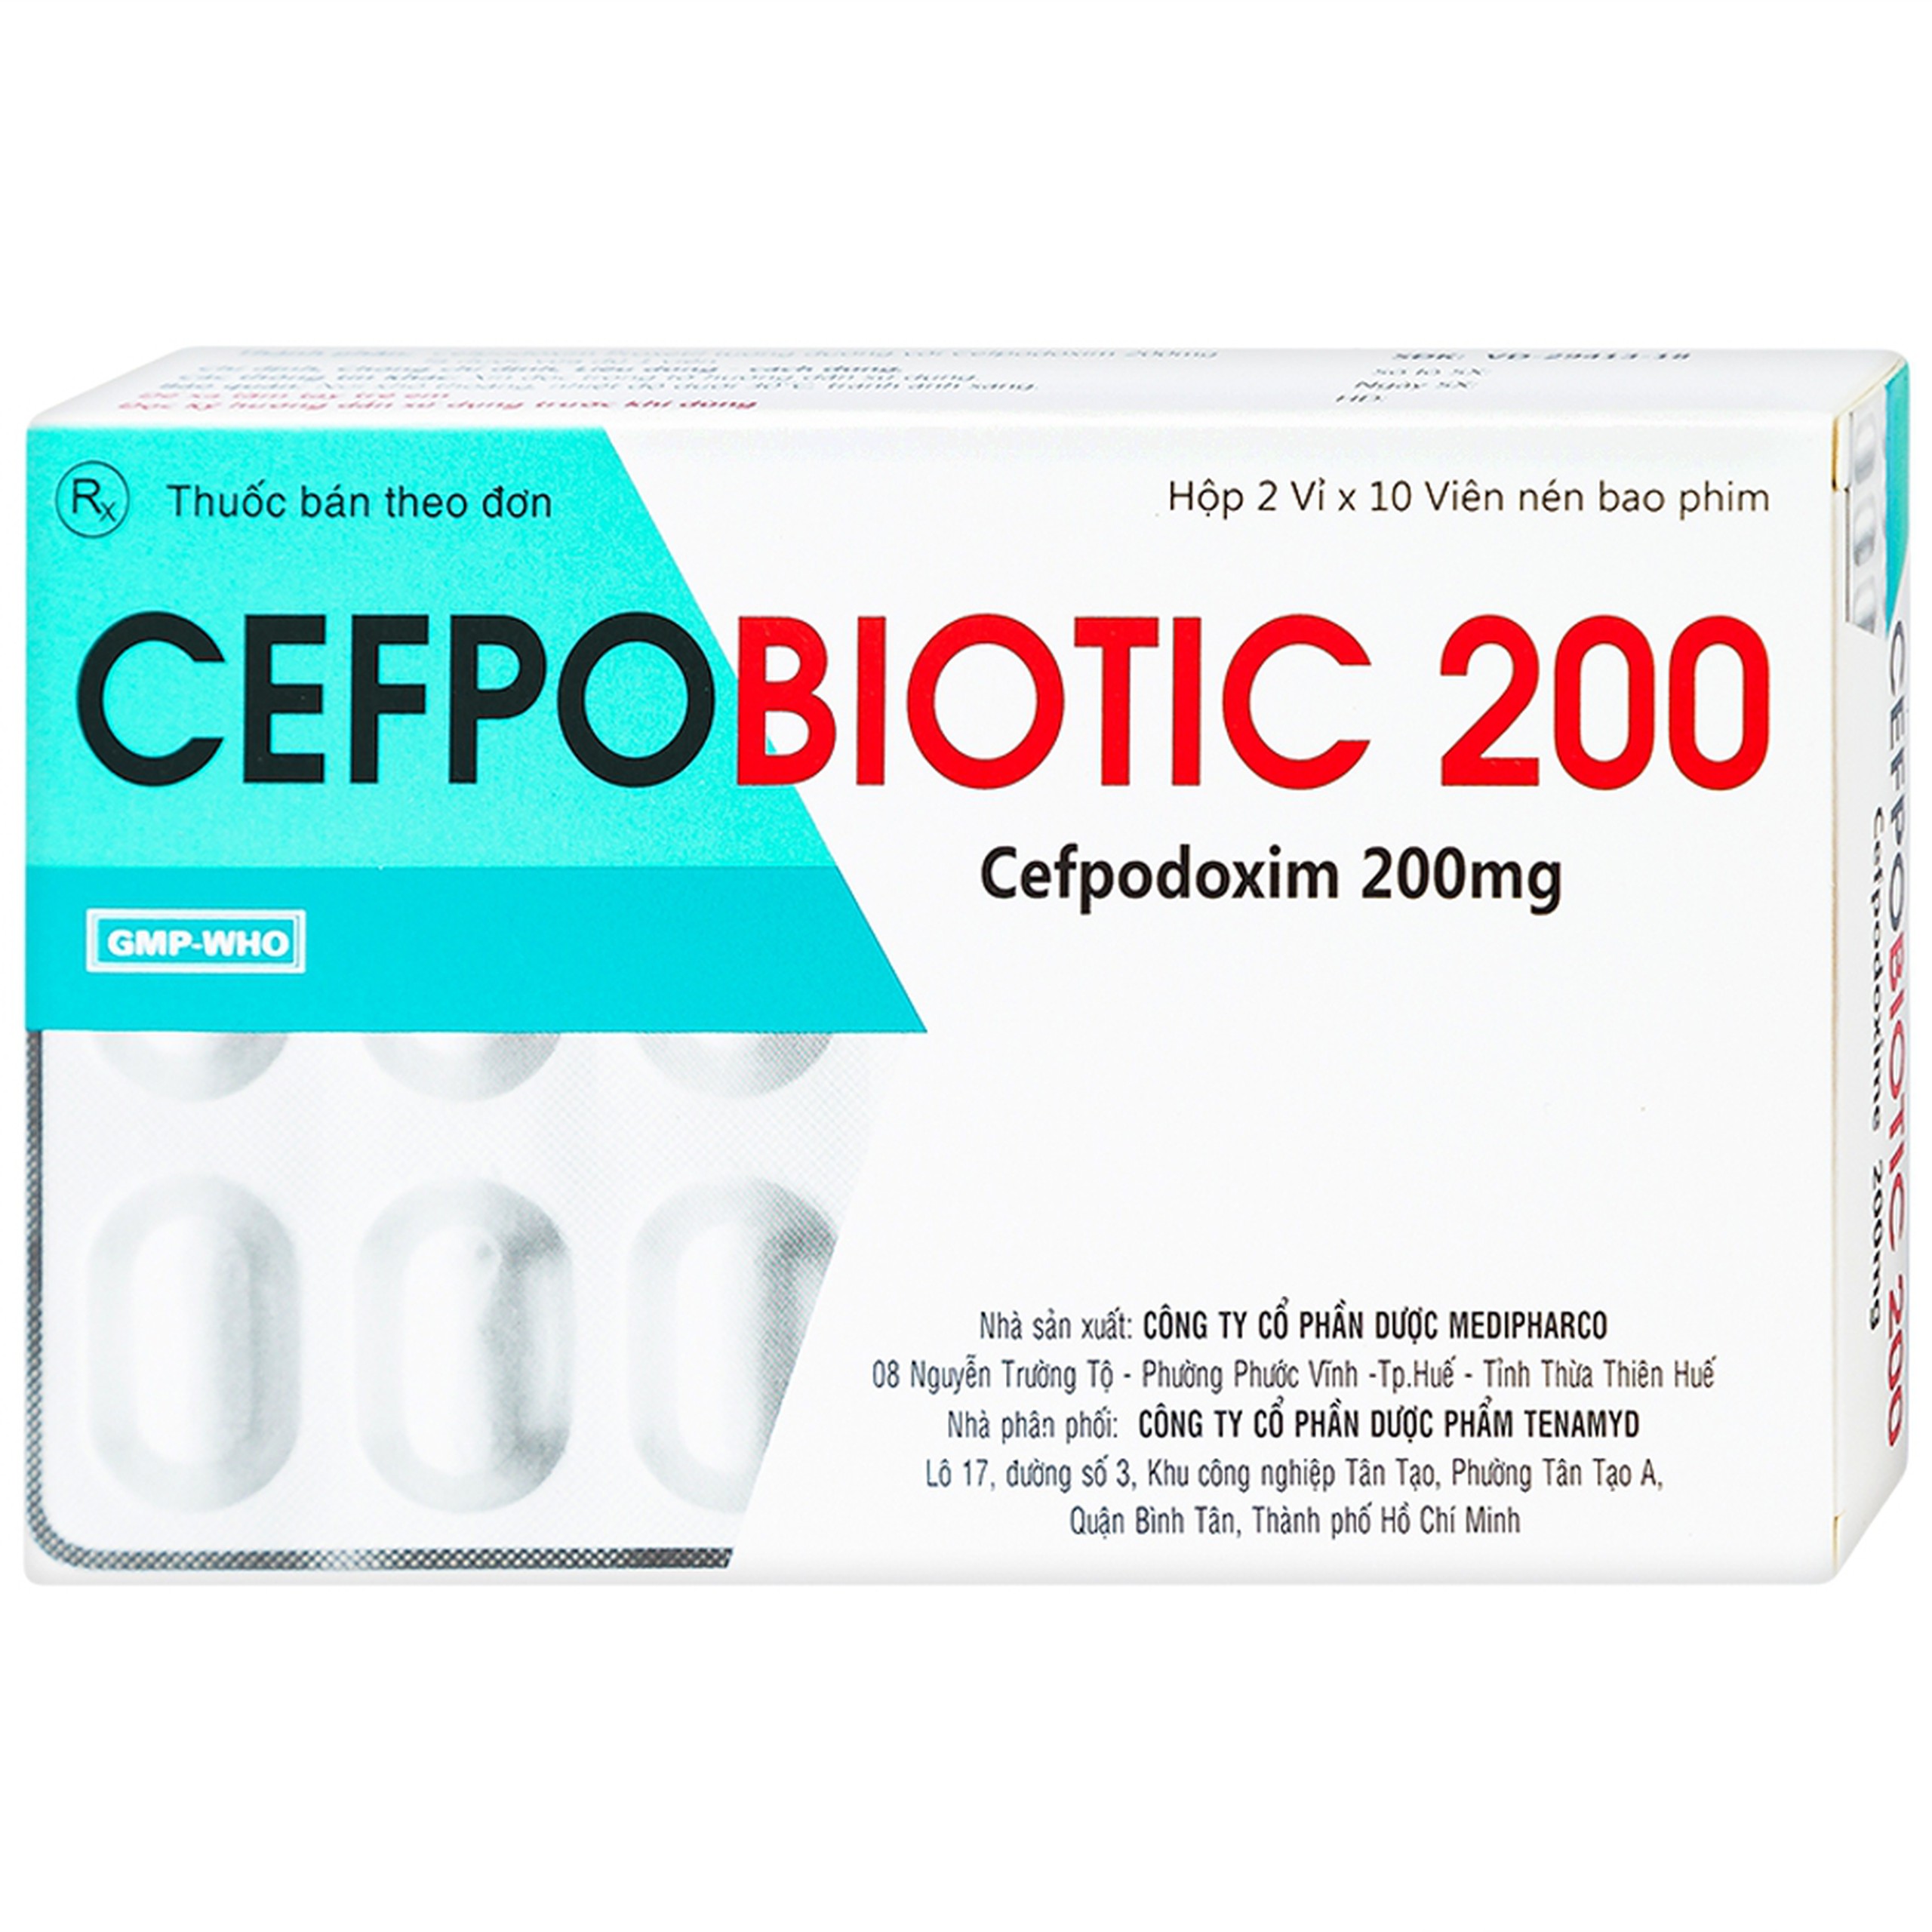 Thuốc Cefpobiotic 200mg Medipharco điều trị nhiễm khuẩn (2 vỉ x 10 viên)